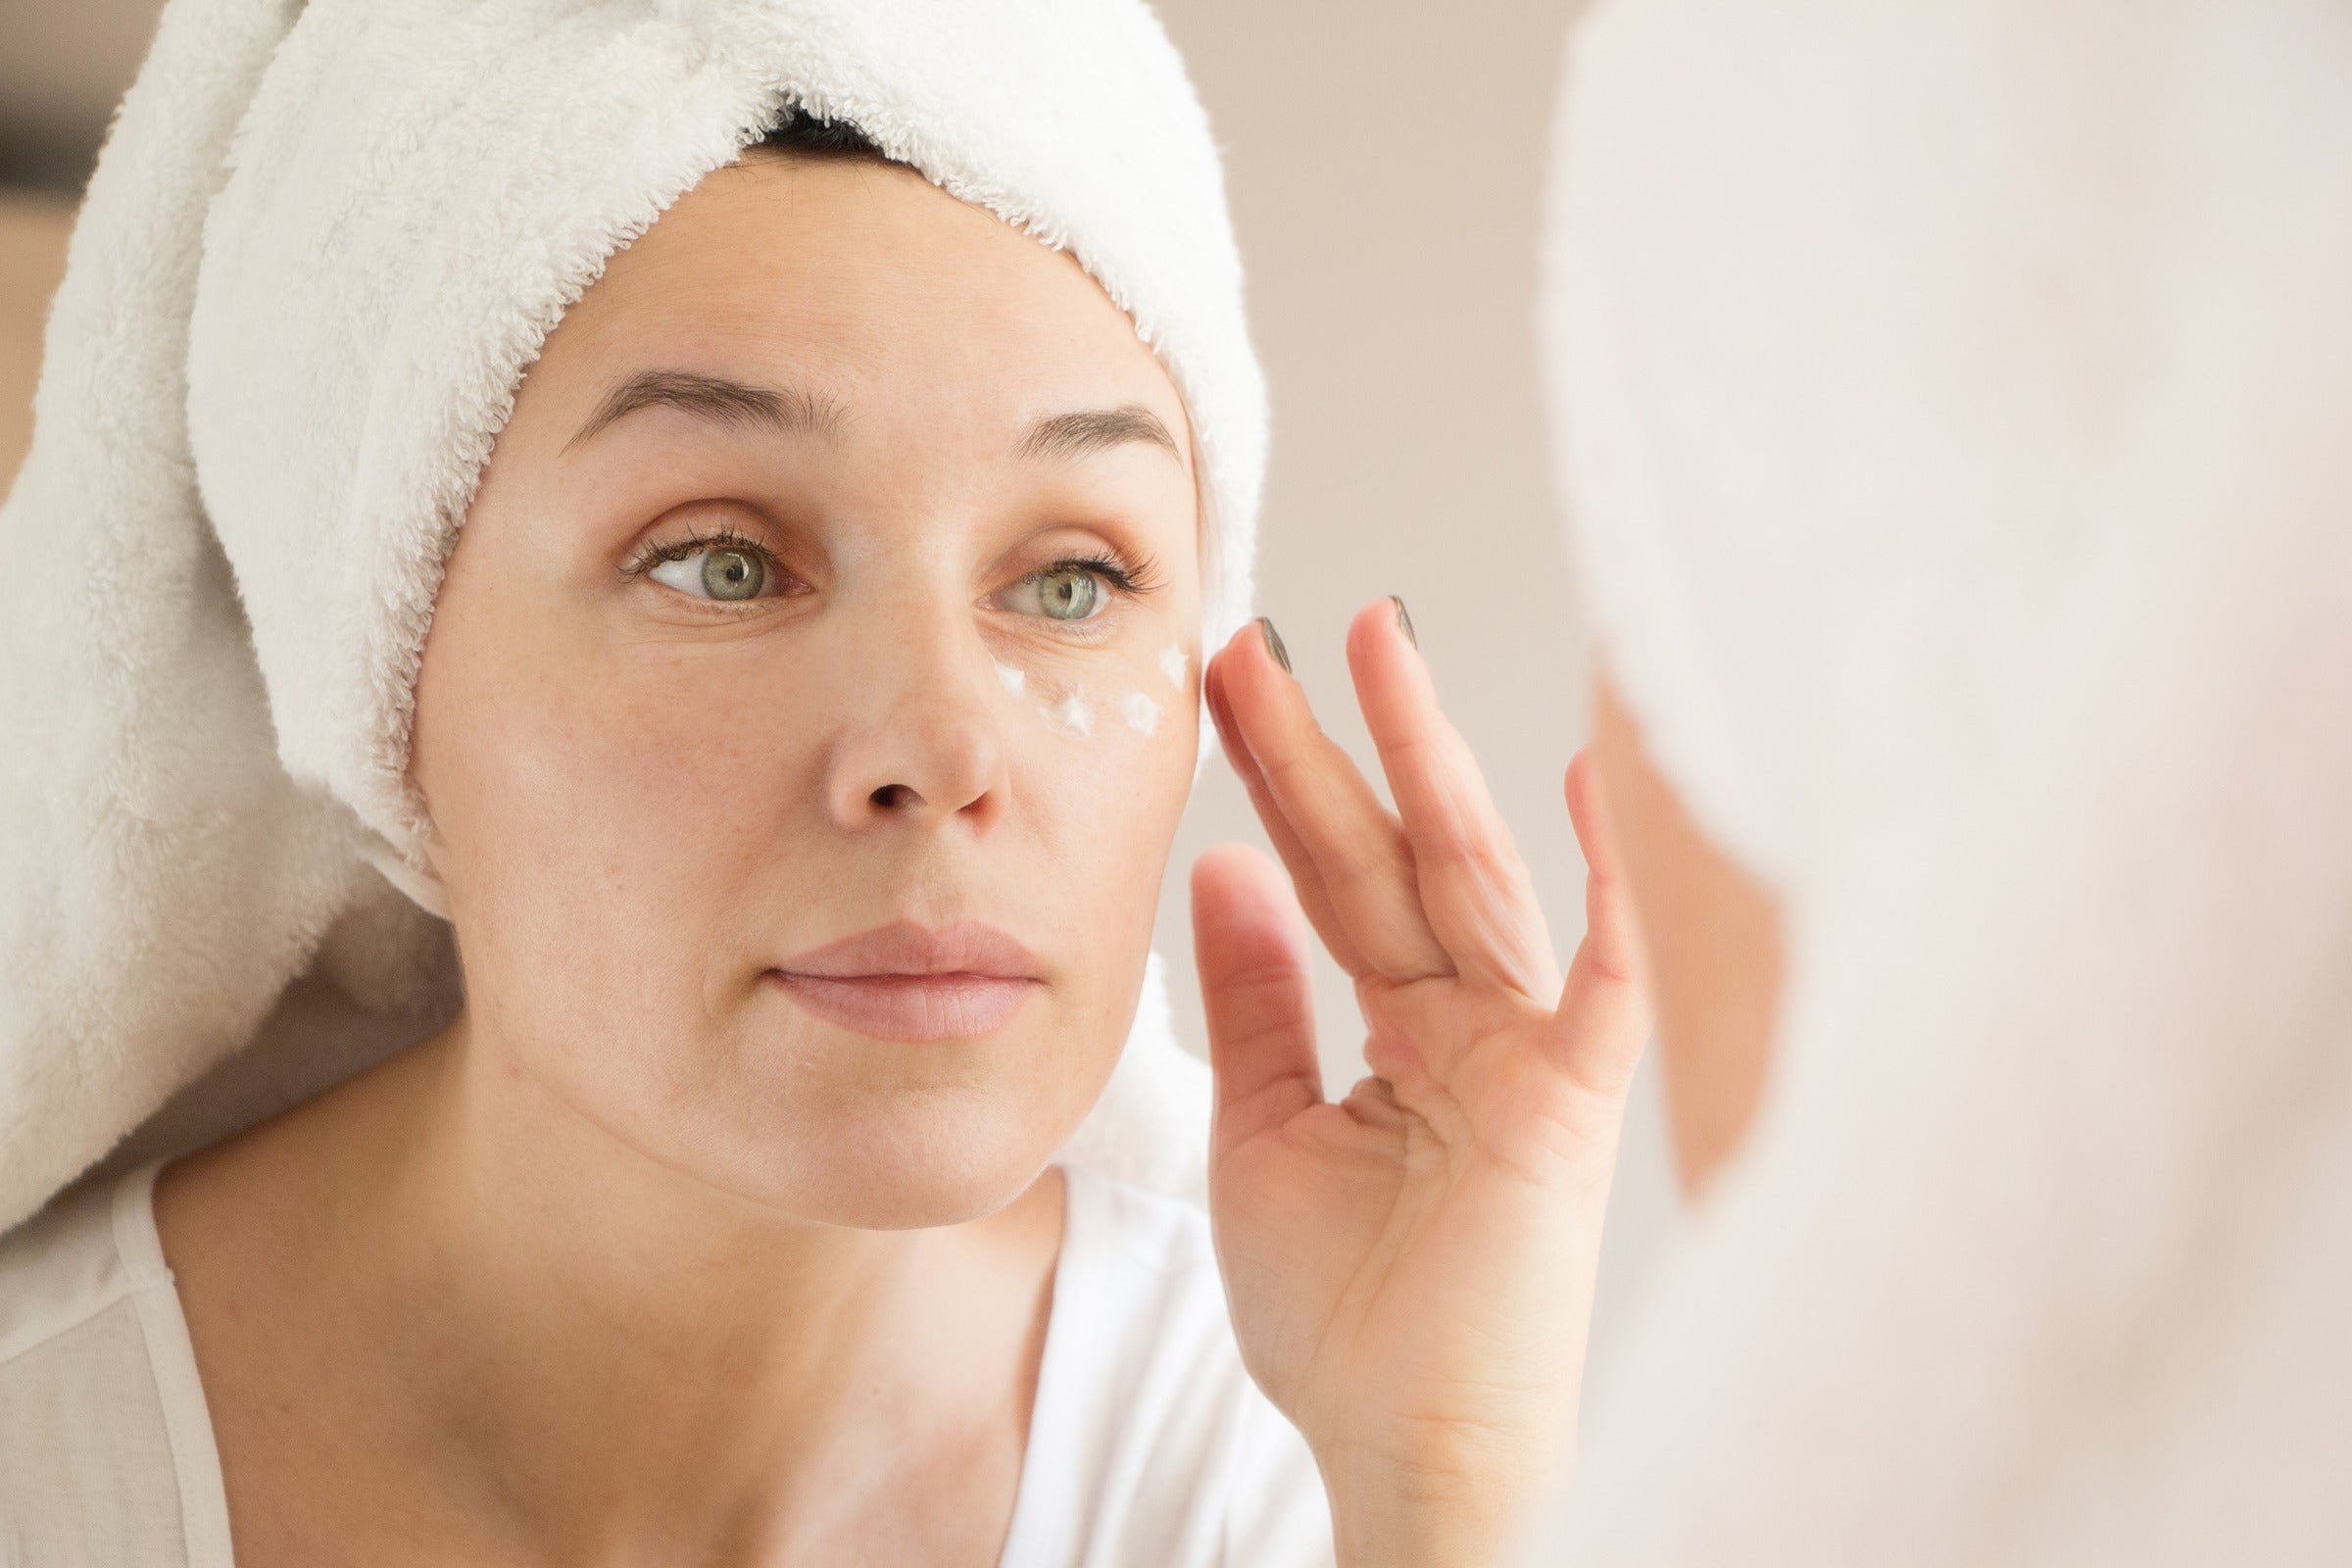 Under Eye Hemorrhoid Cream Benefits & Side Effects